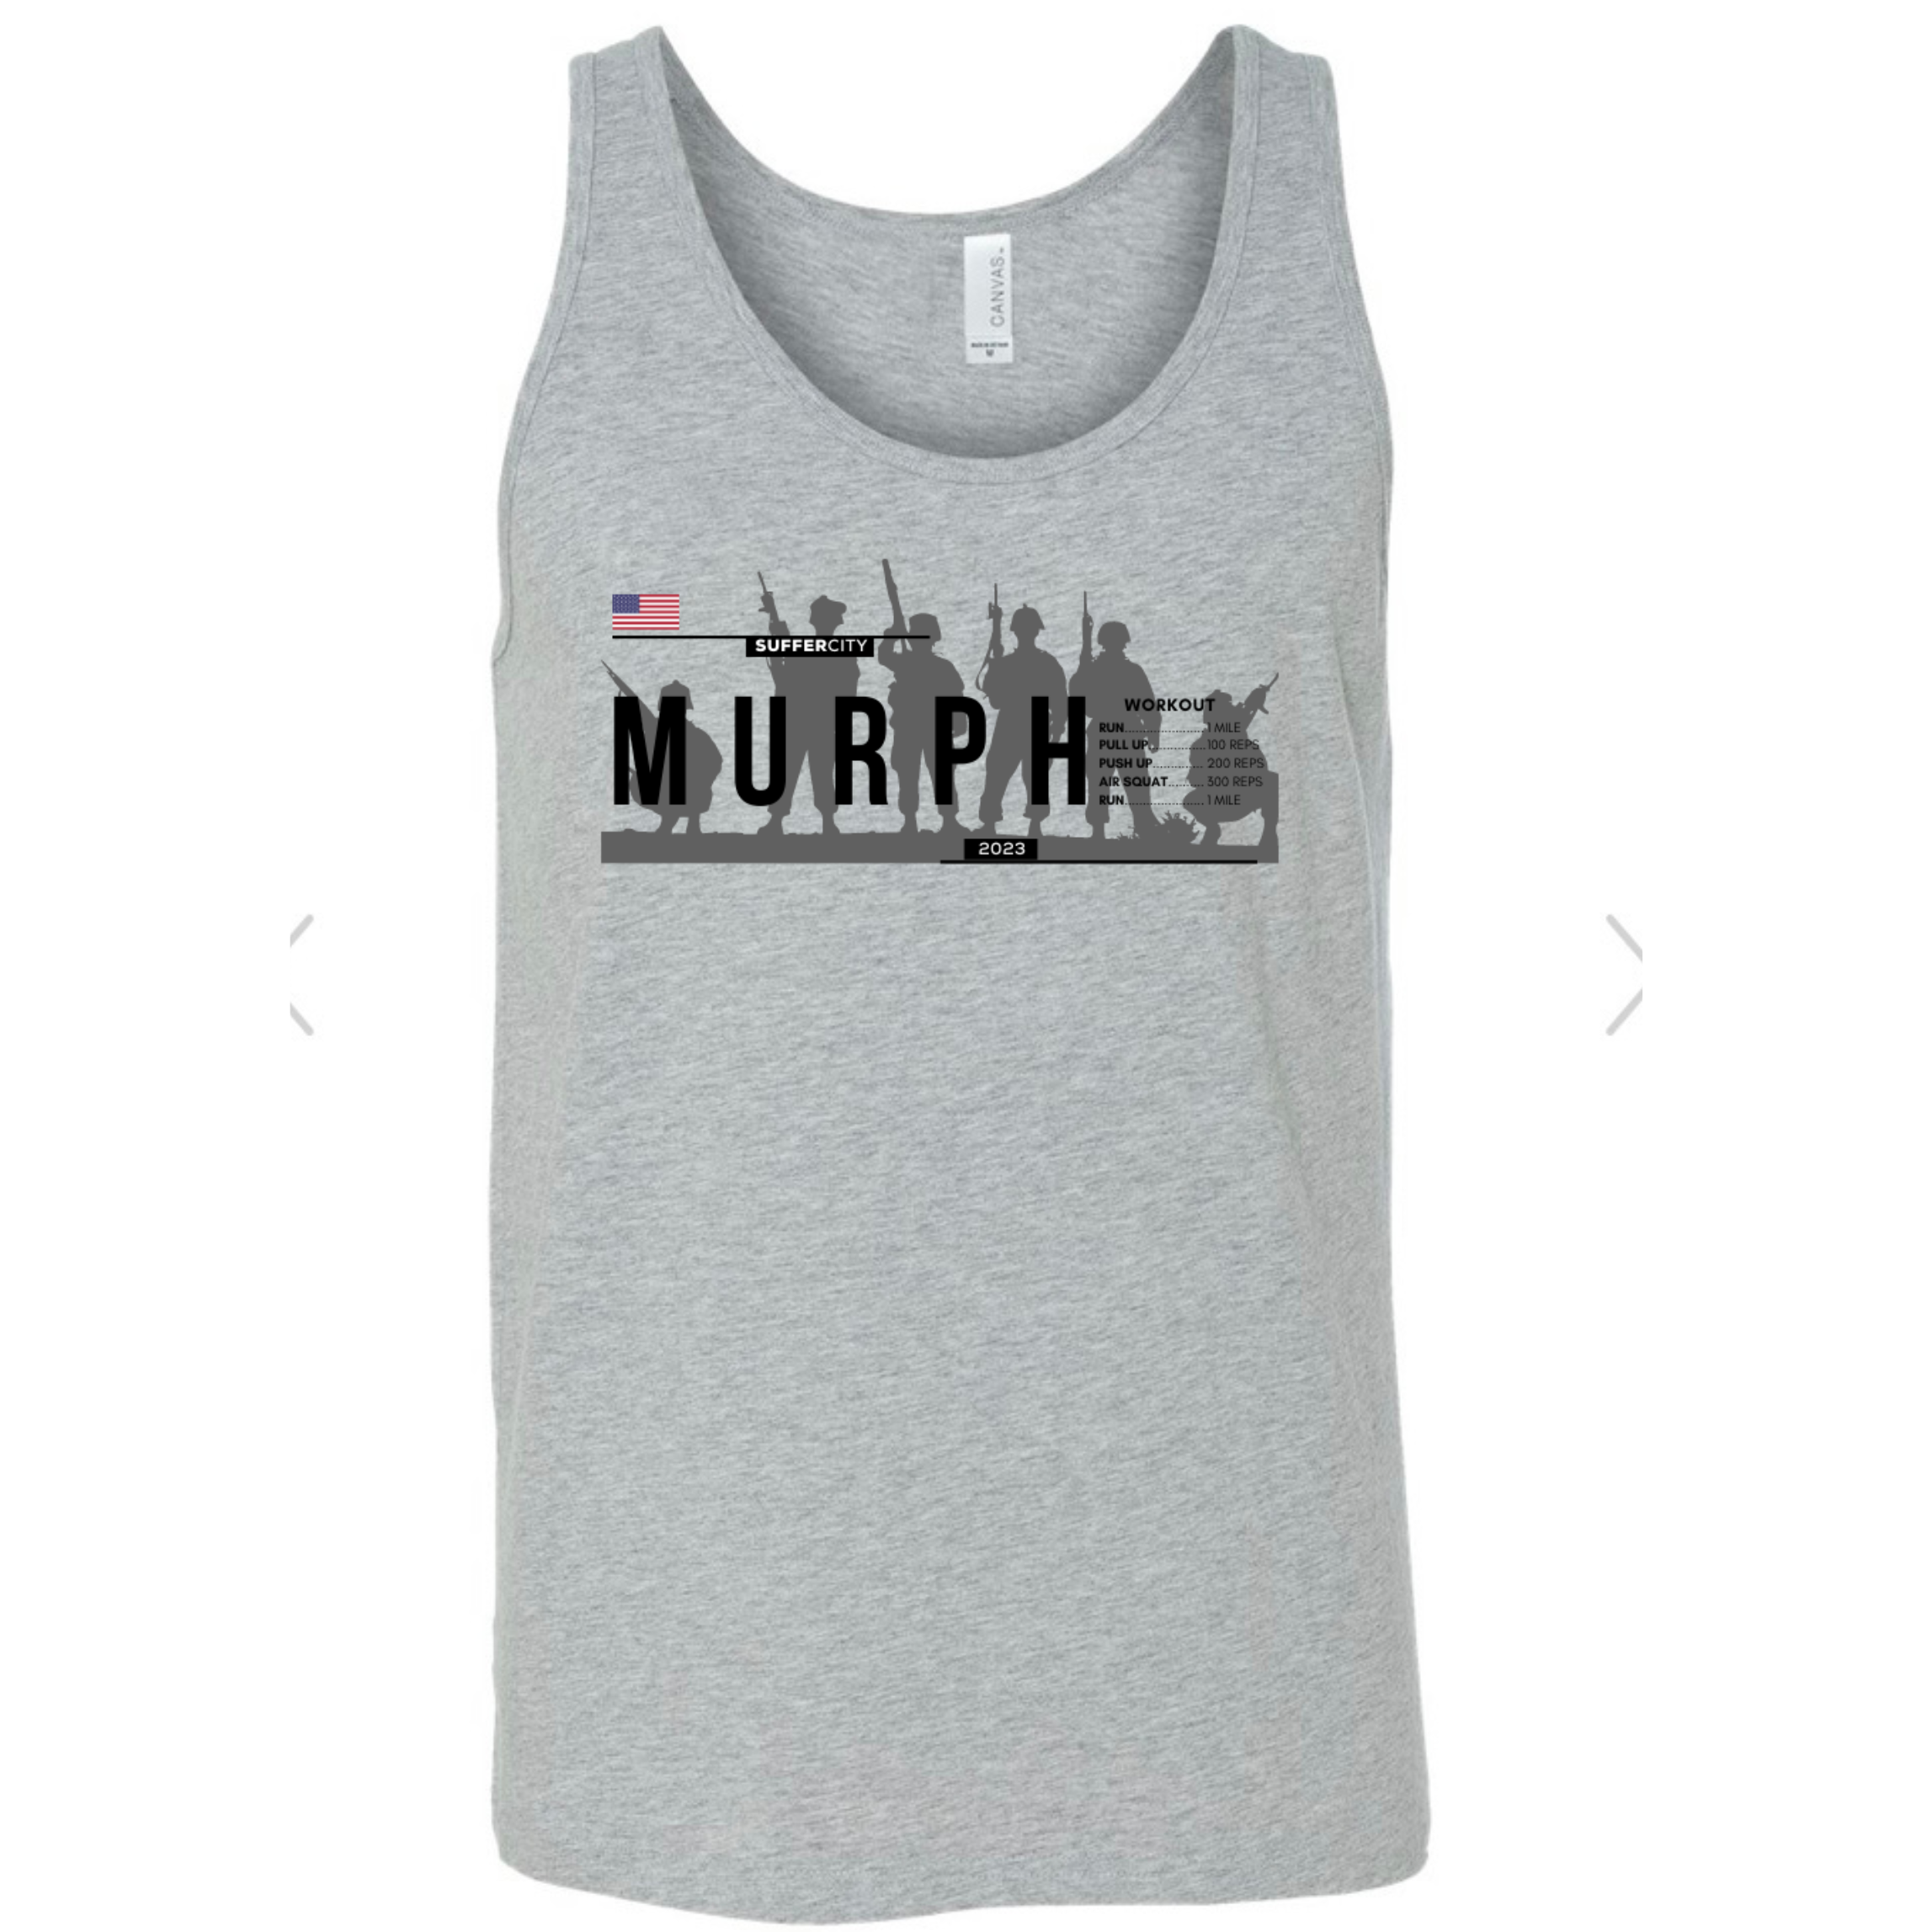 Murph “Cooler" Options